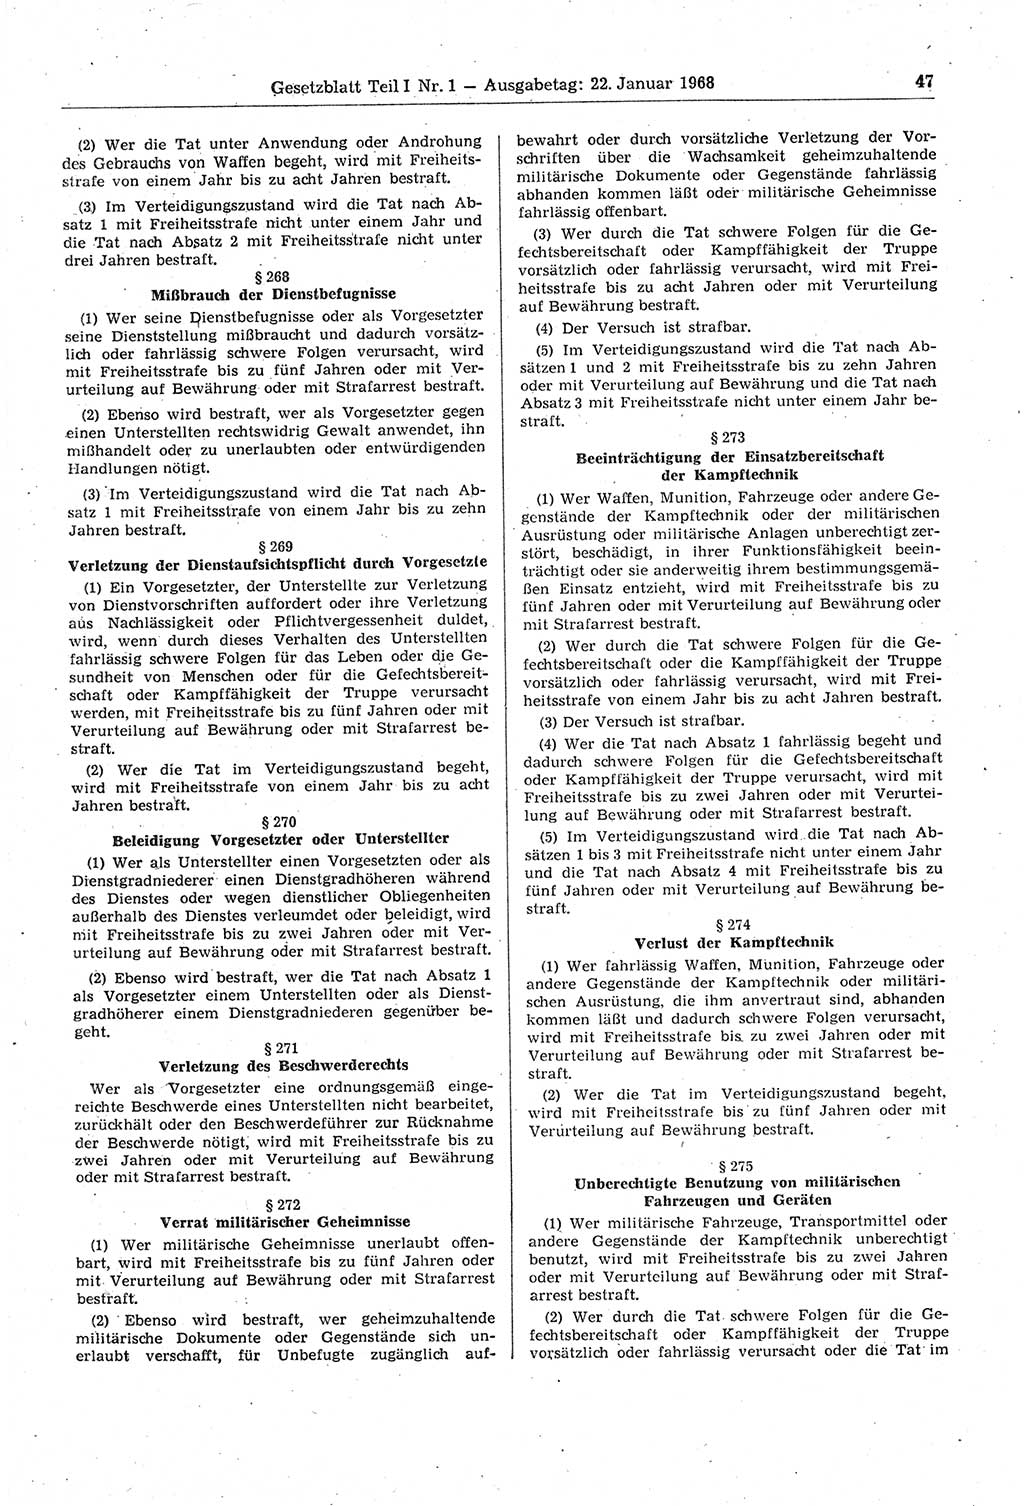 Gesetzblatt (GBl.) der Deutschen Demokratischen Republik (DDR) Teil Ⅰ 1968, Seite 47 (GBl. DDR Ⅰ 1968, S. 47)